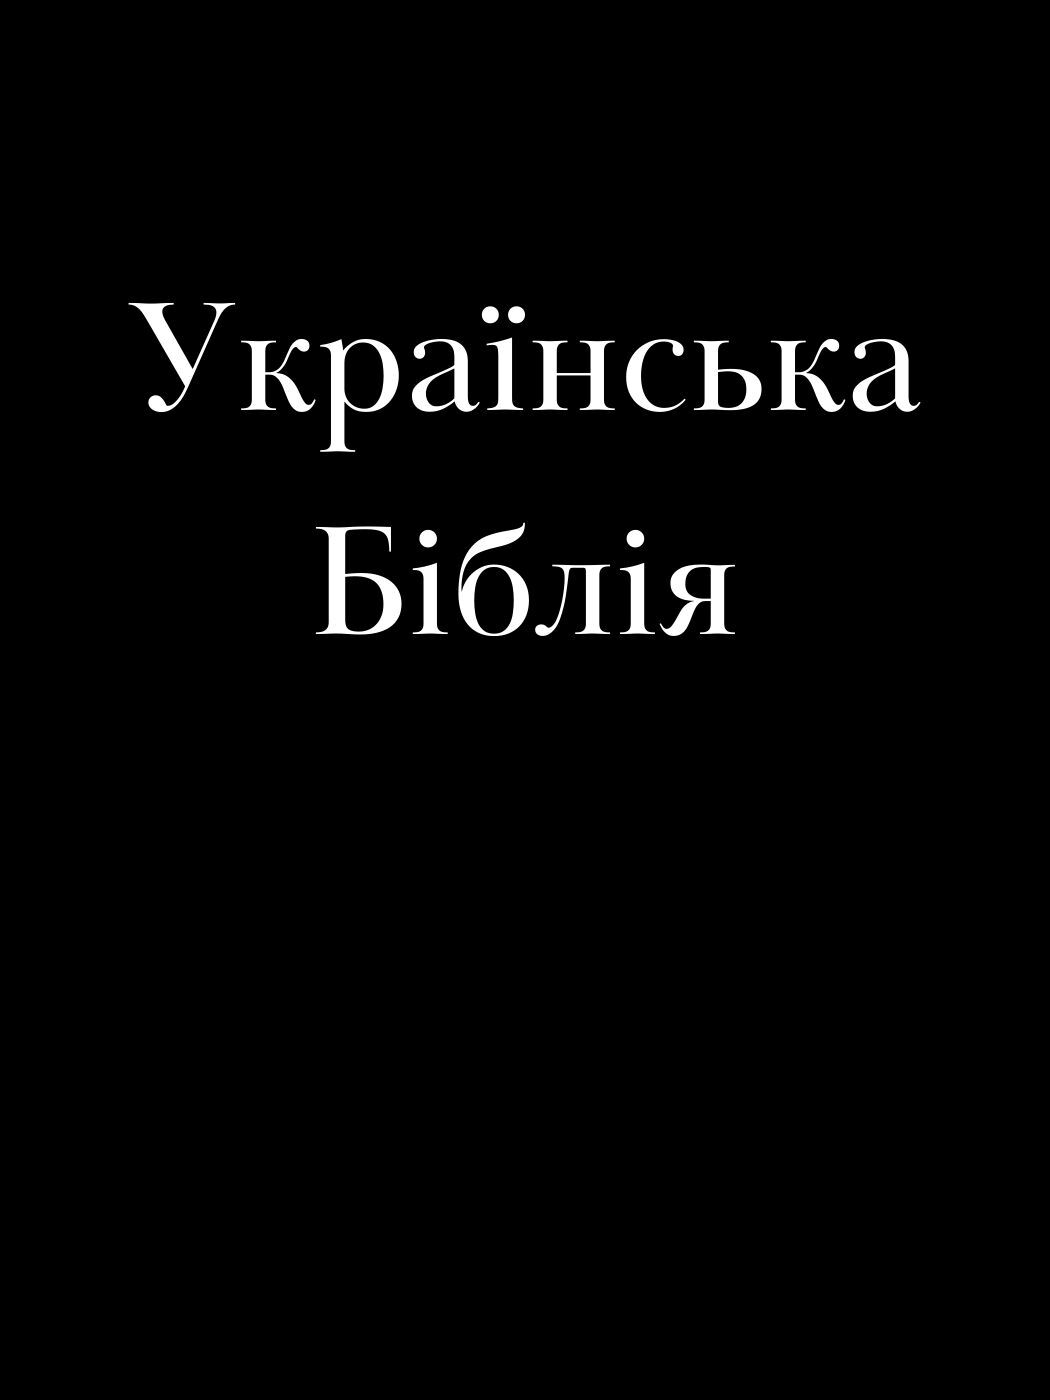 Українська Біблія / Oekraïense Bijbel